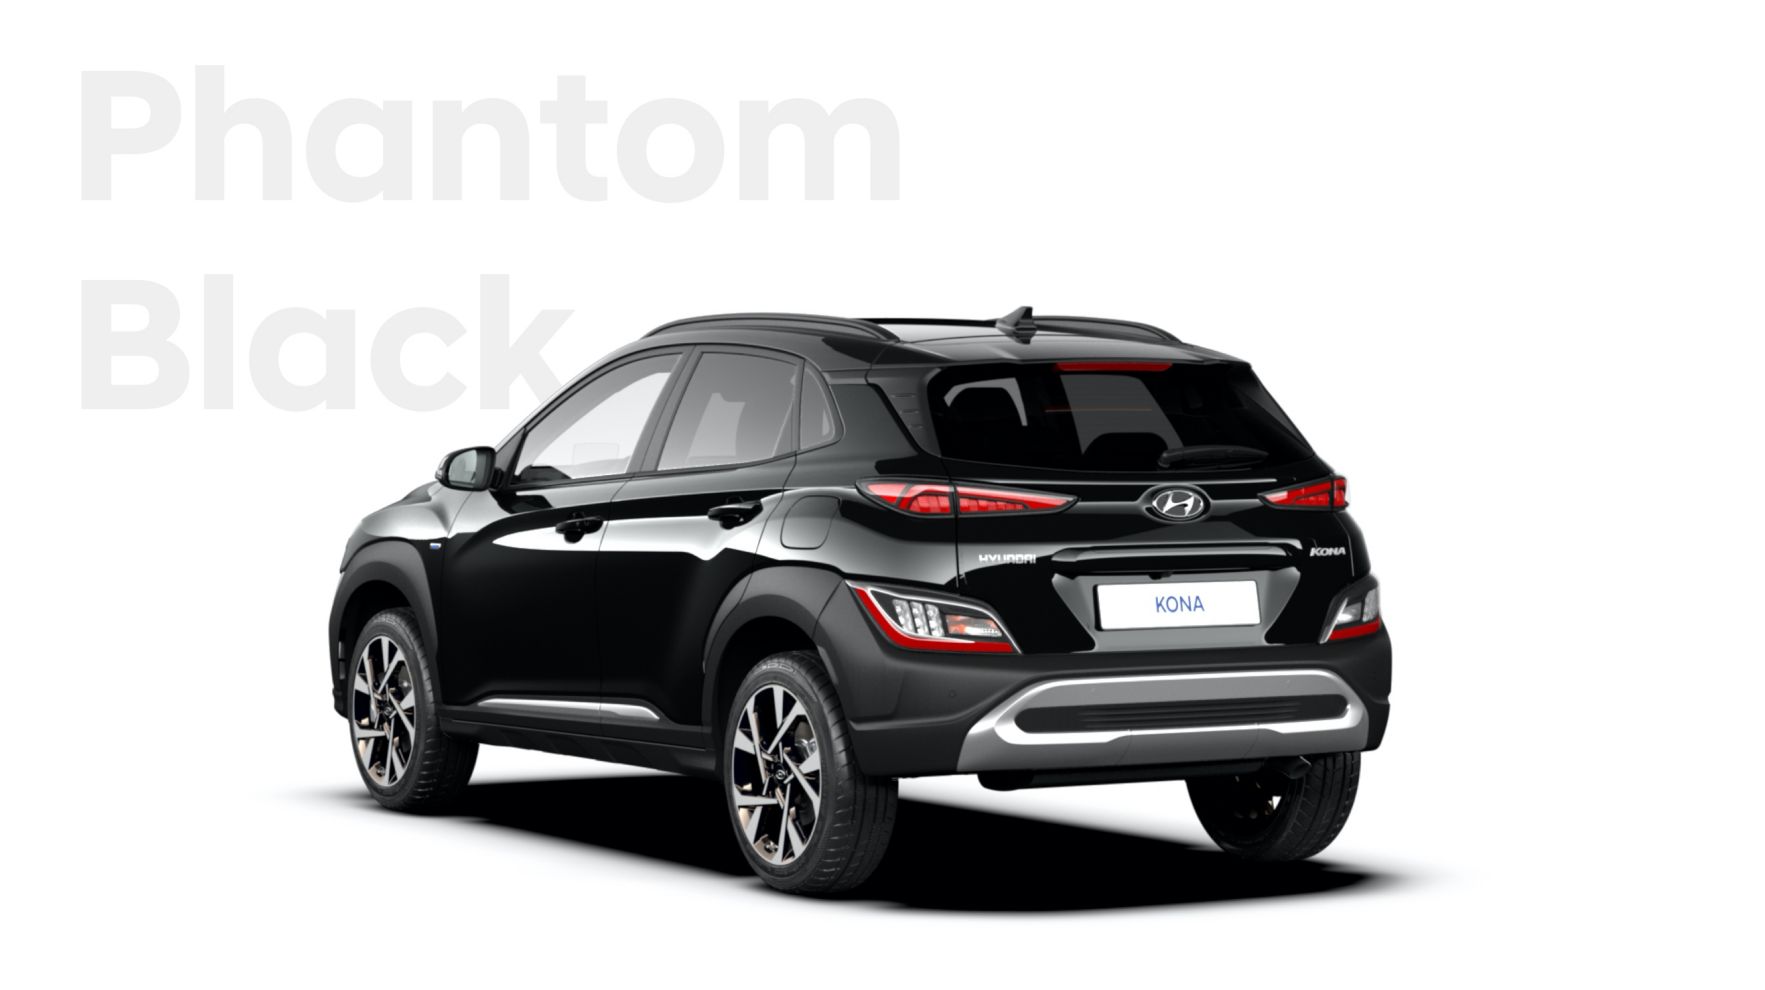 Nová velká paleta barevných variant nového modelu Hyundai KONA: barva Phantom Black.